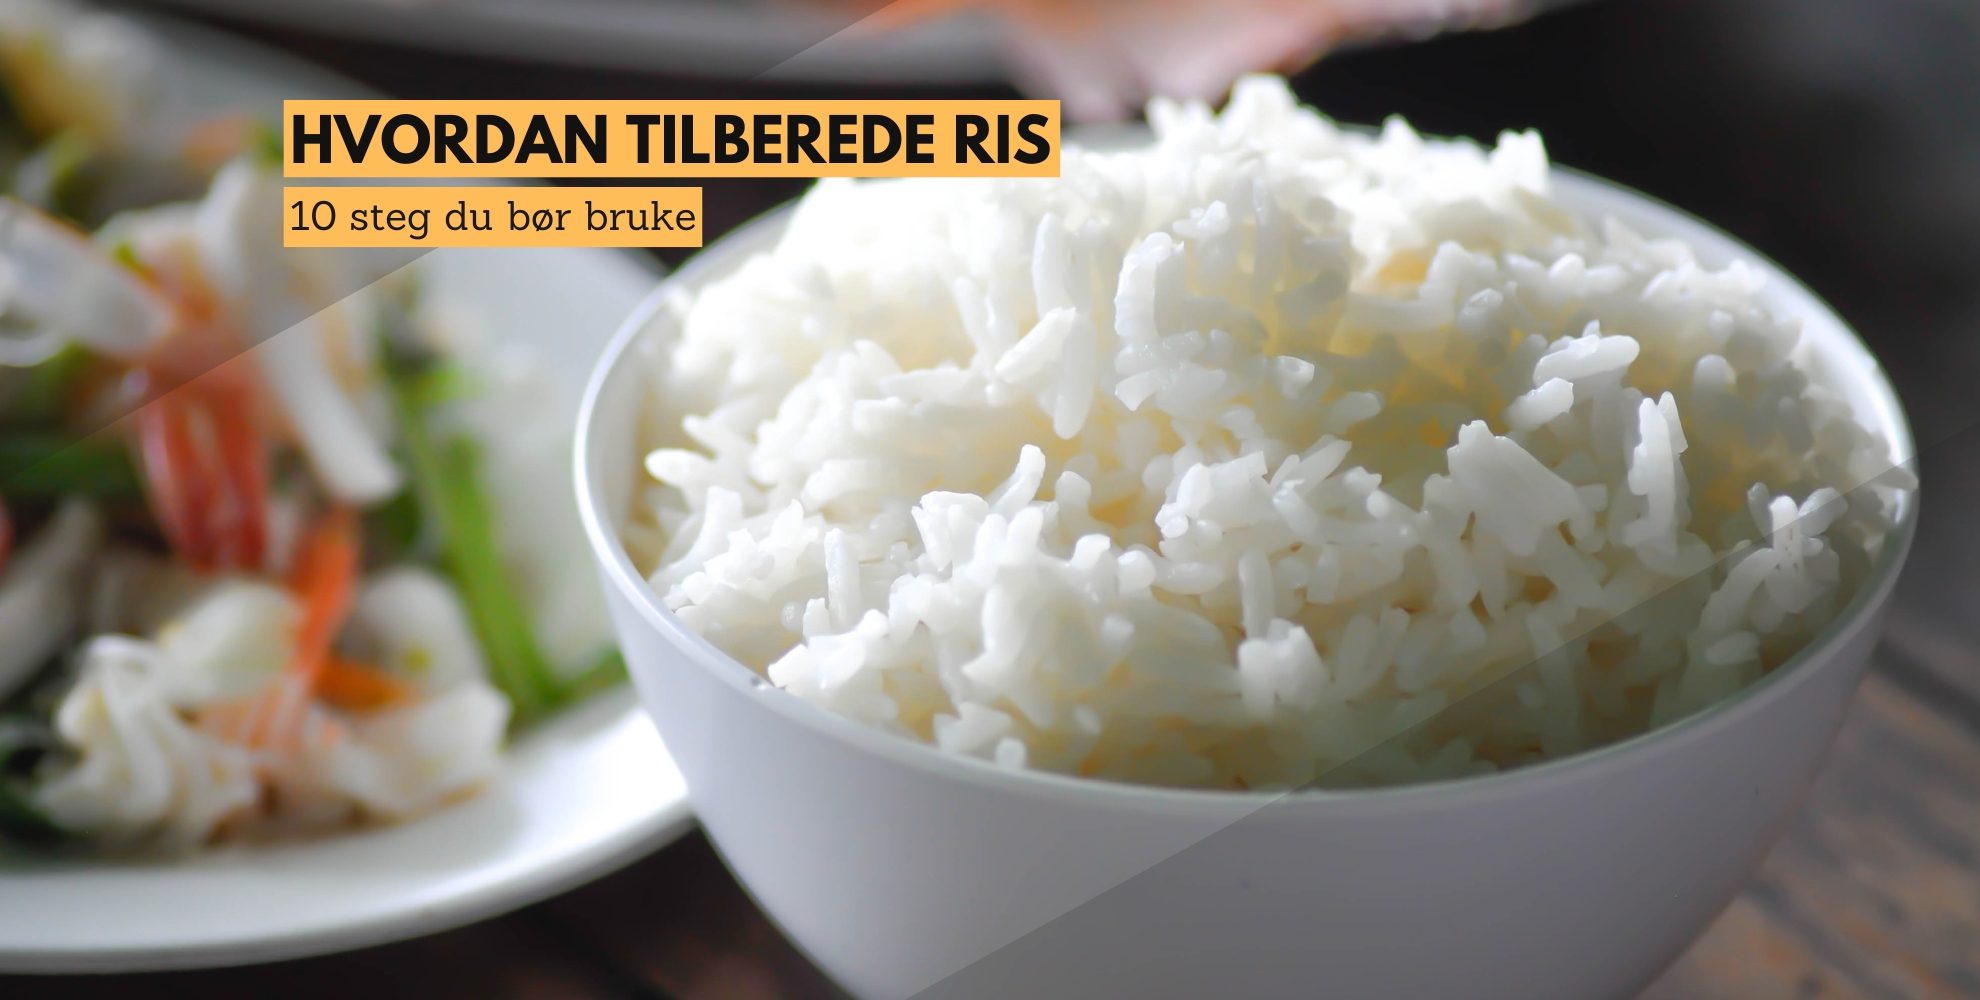 Bilde av ris i en bolle og tekst som sier: Hvordan tilberede ris, 10 steg du bør bruke